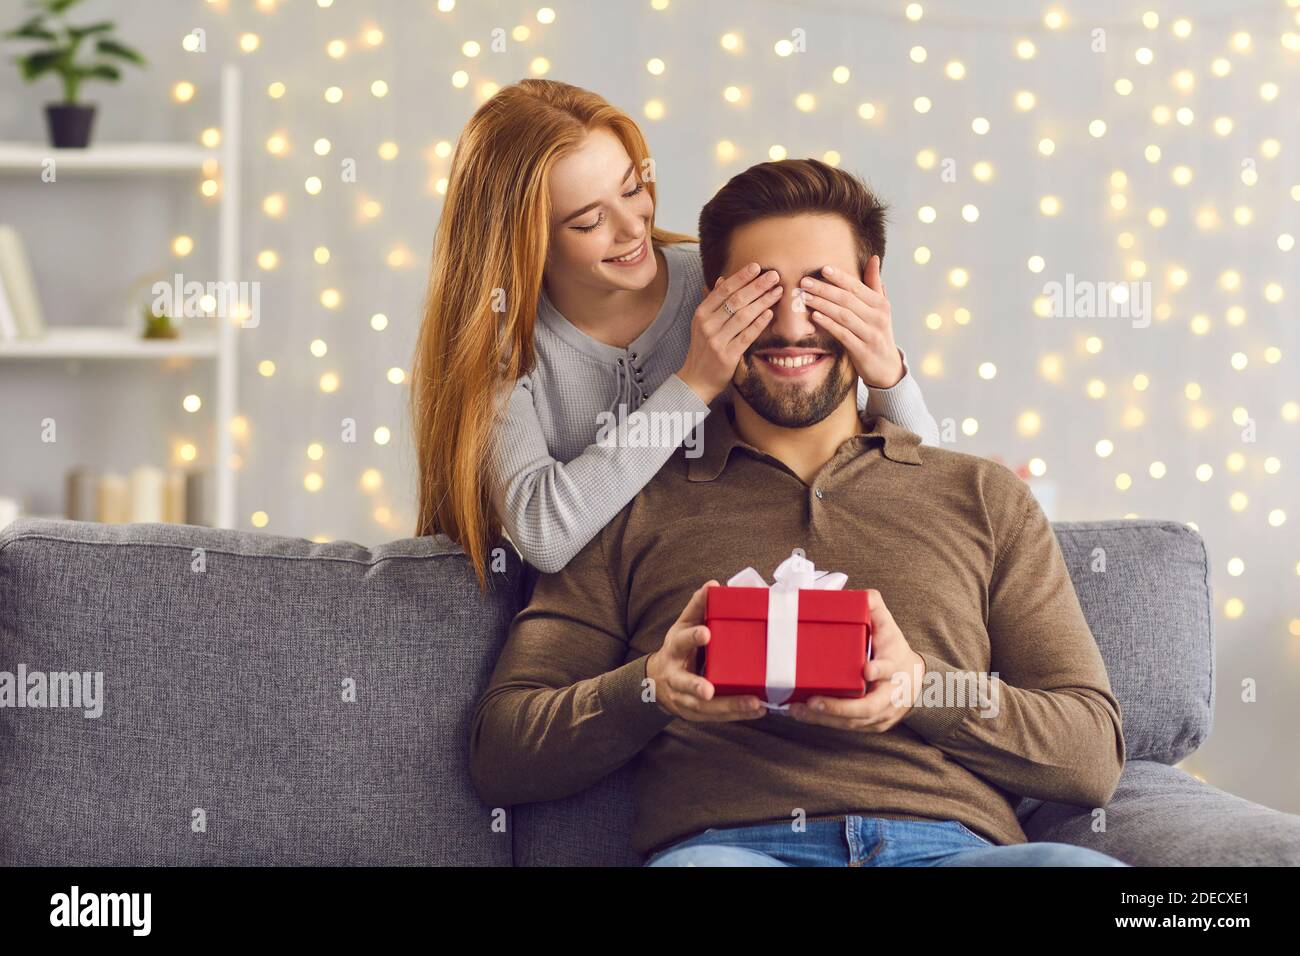 Lächelnde junge Frau bedeckt die Augen ihres Freundes und gibt ihm Ein Überraschungsgeschenk Stockfoto